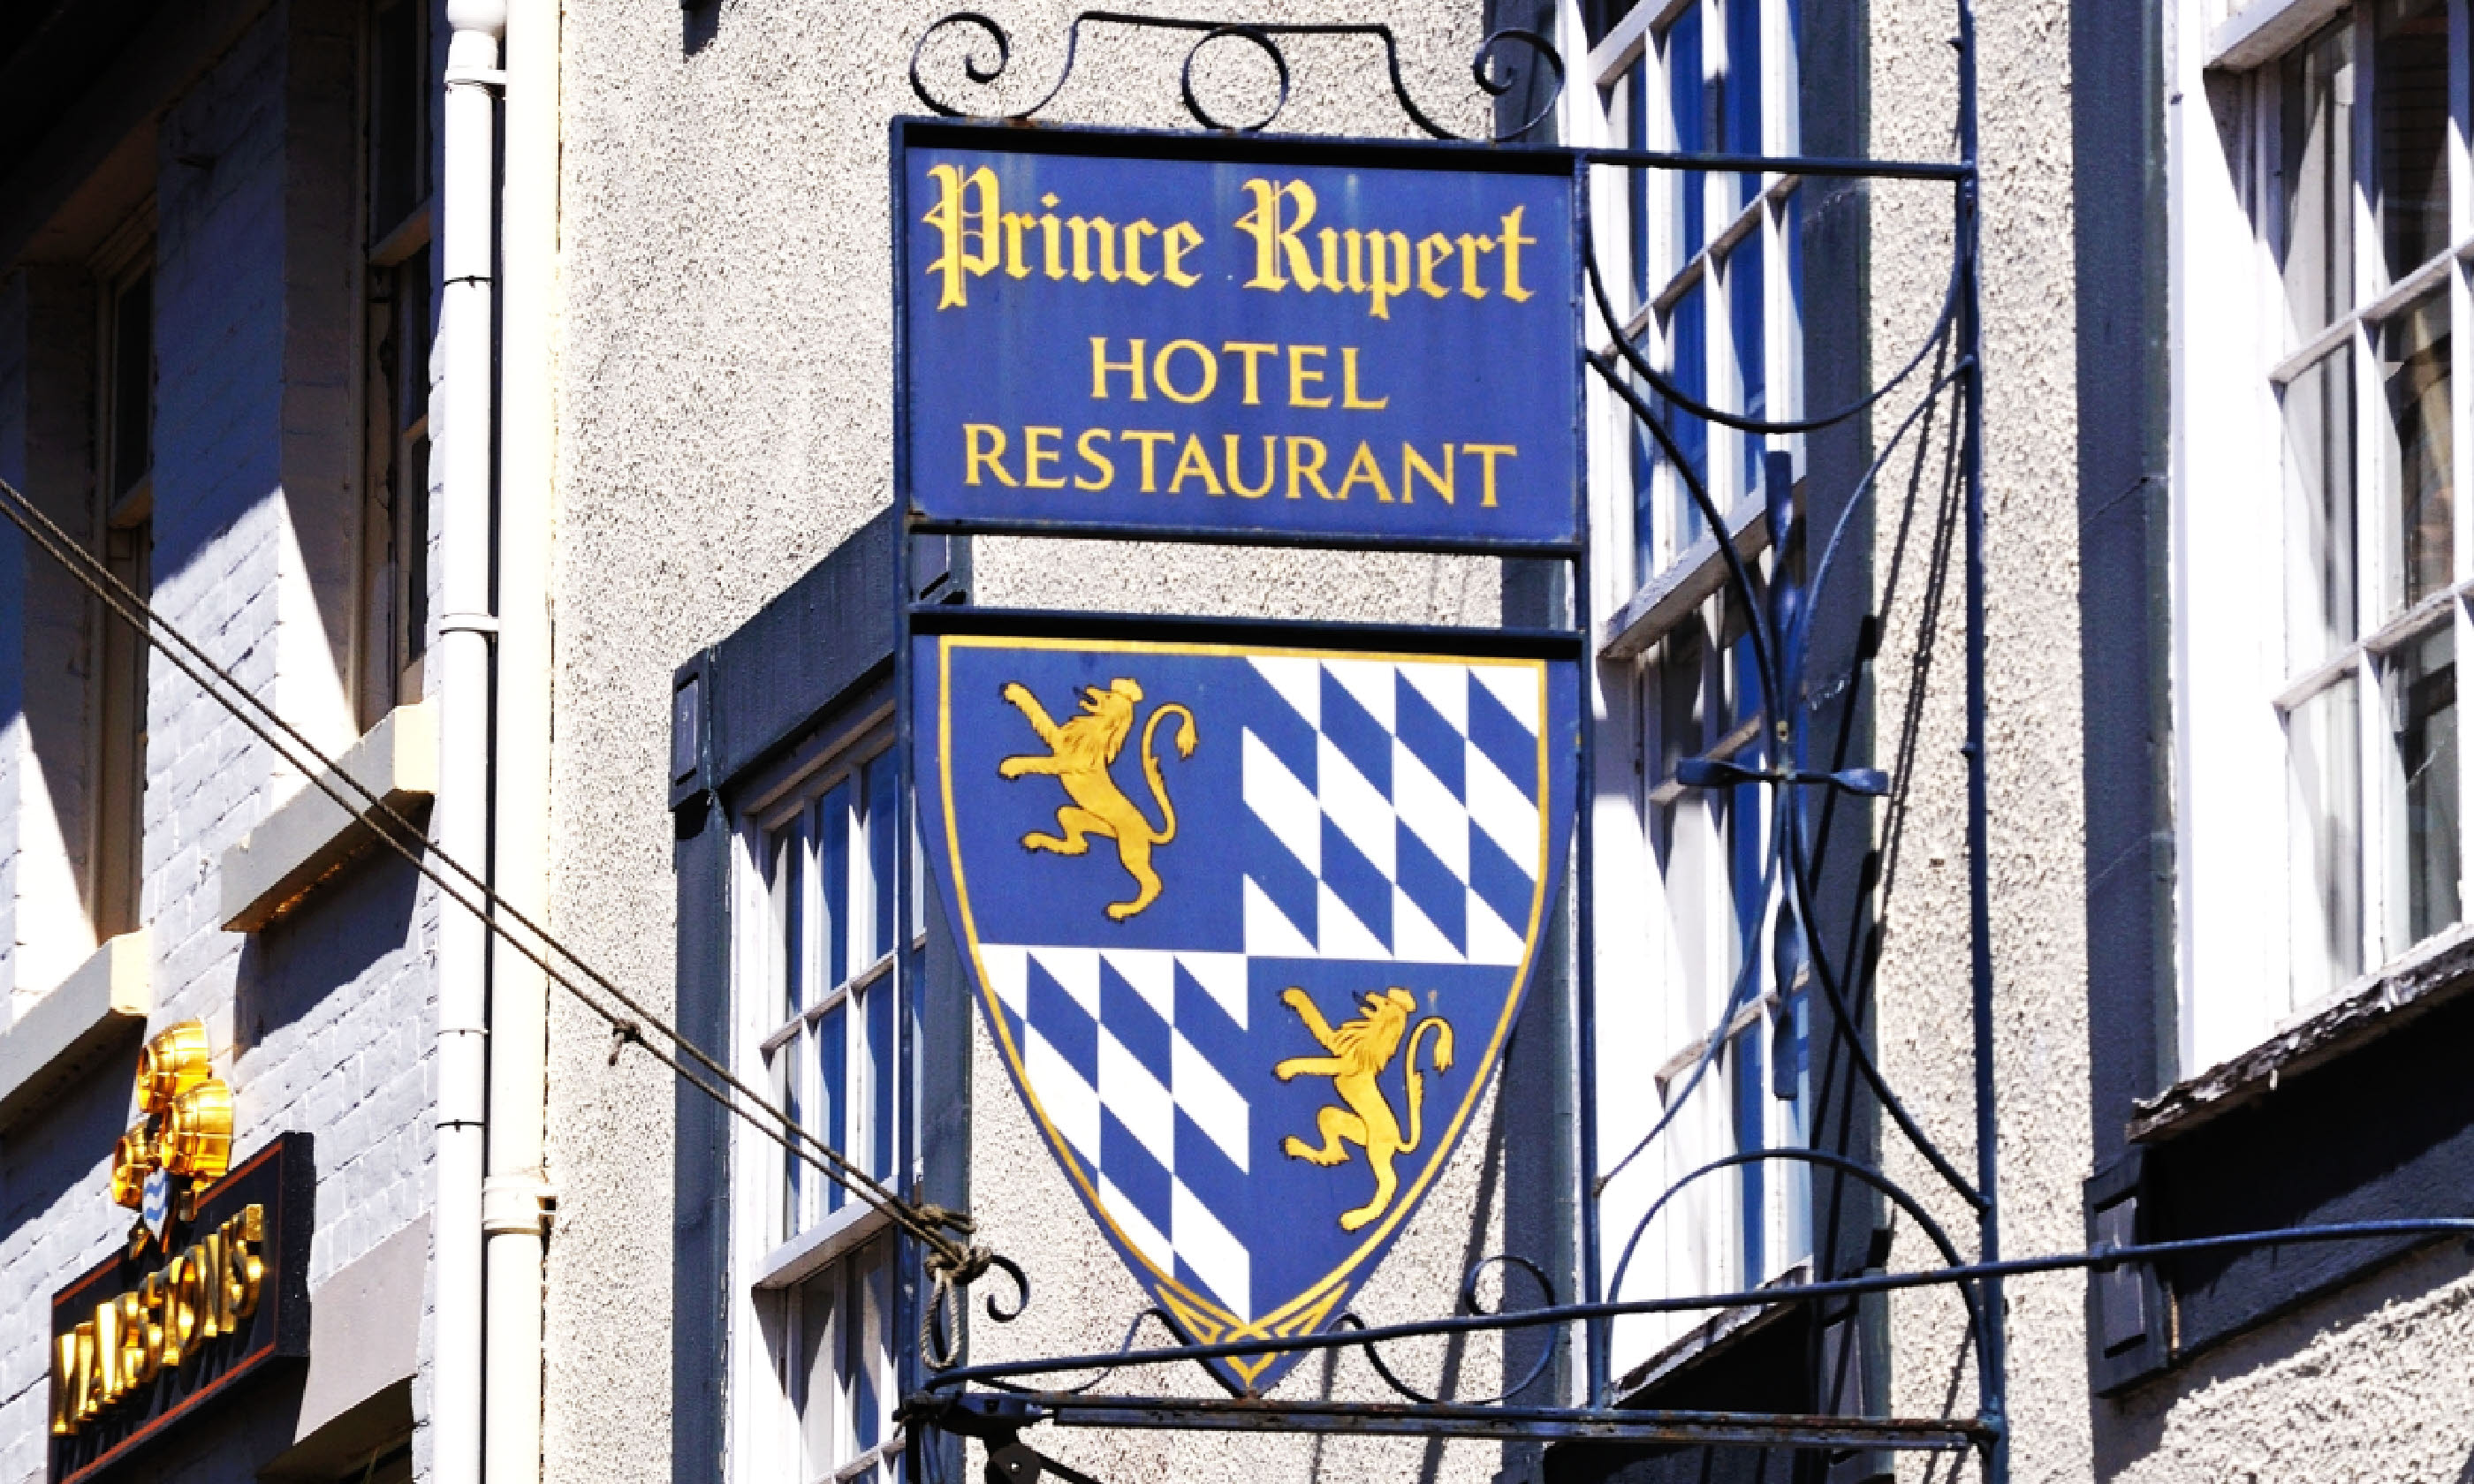 Prince Rupert Hotel (Dreamstime)